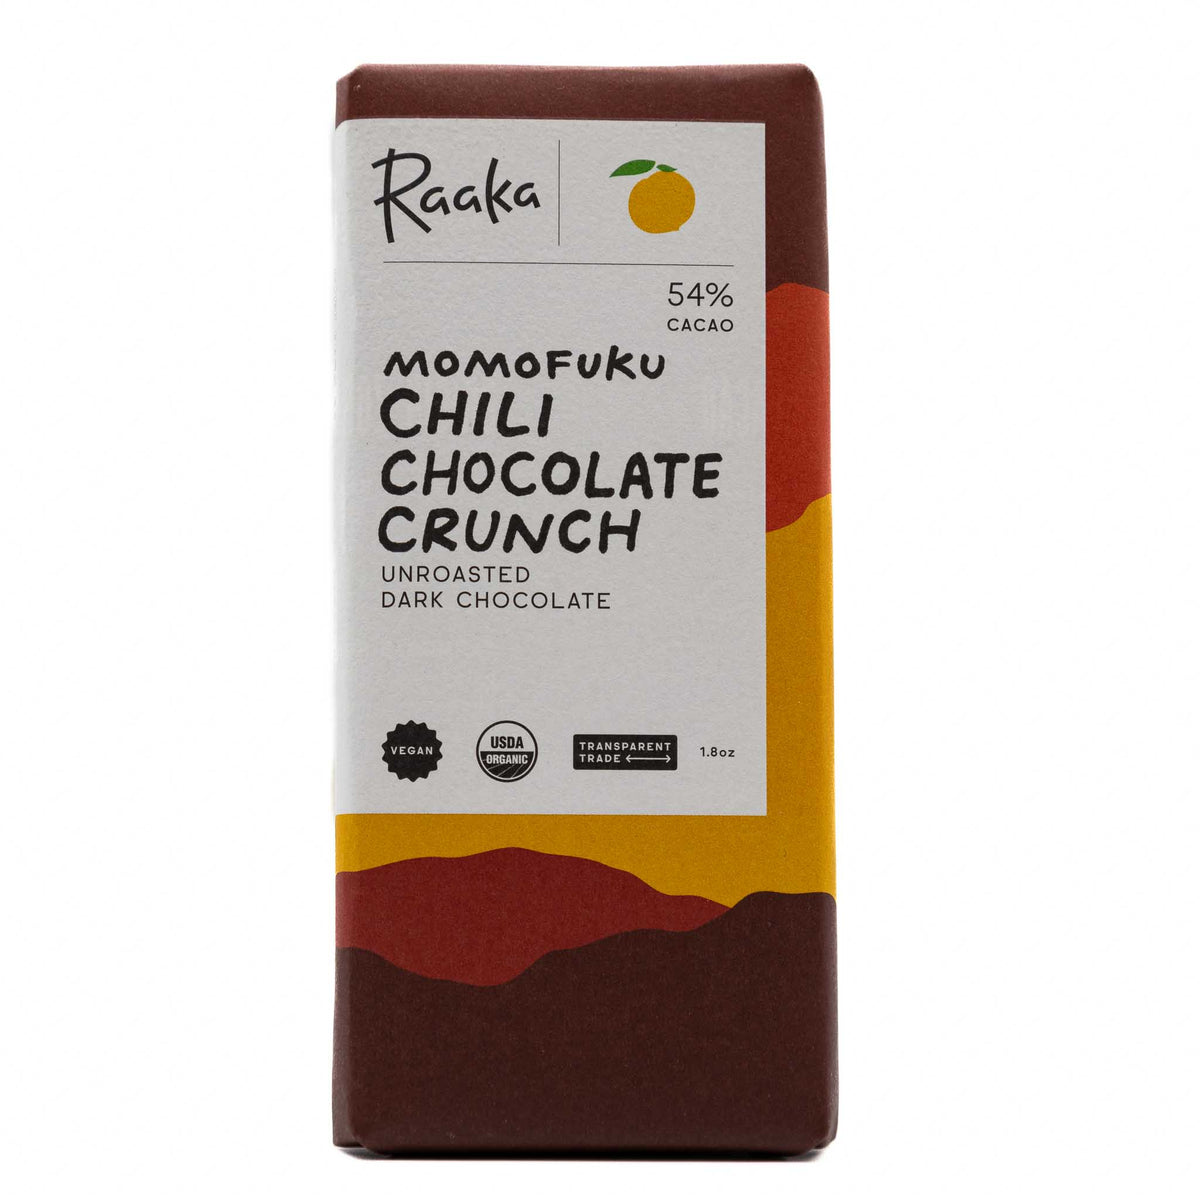 Raaka x Momofuku Chocolate Bar Chili Crunch